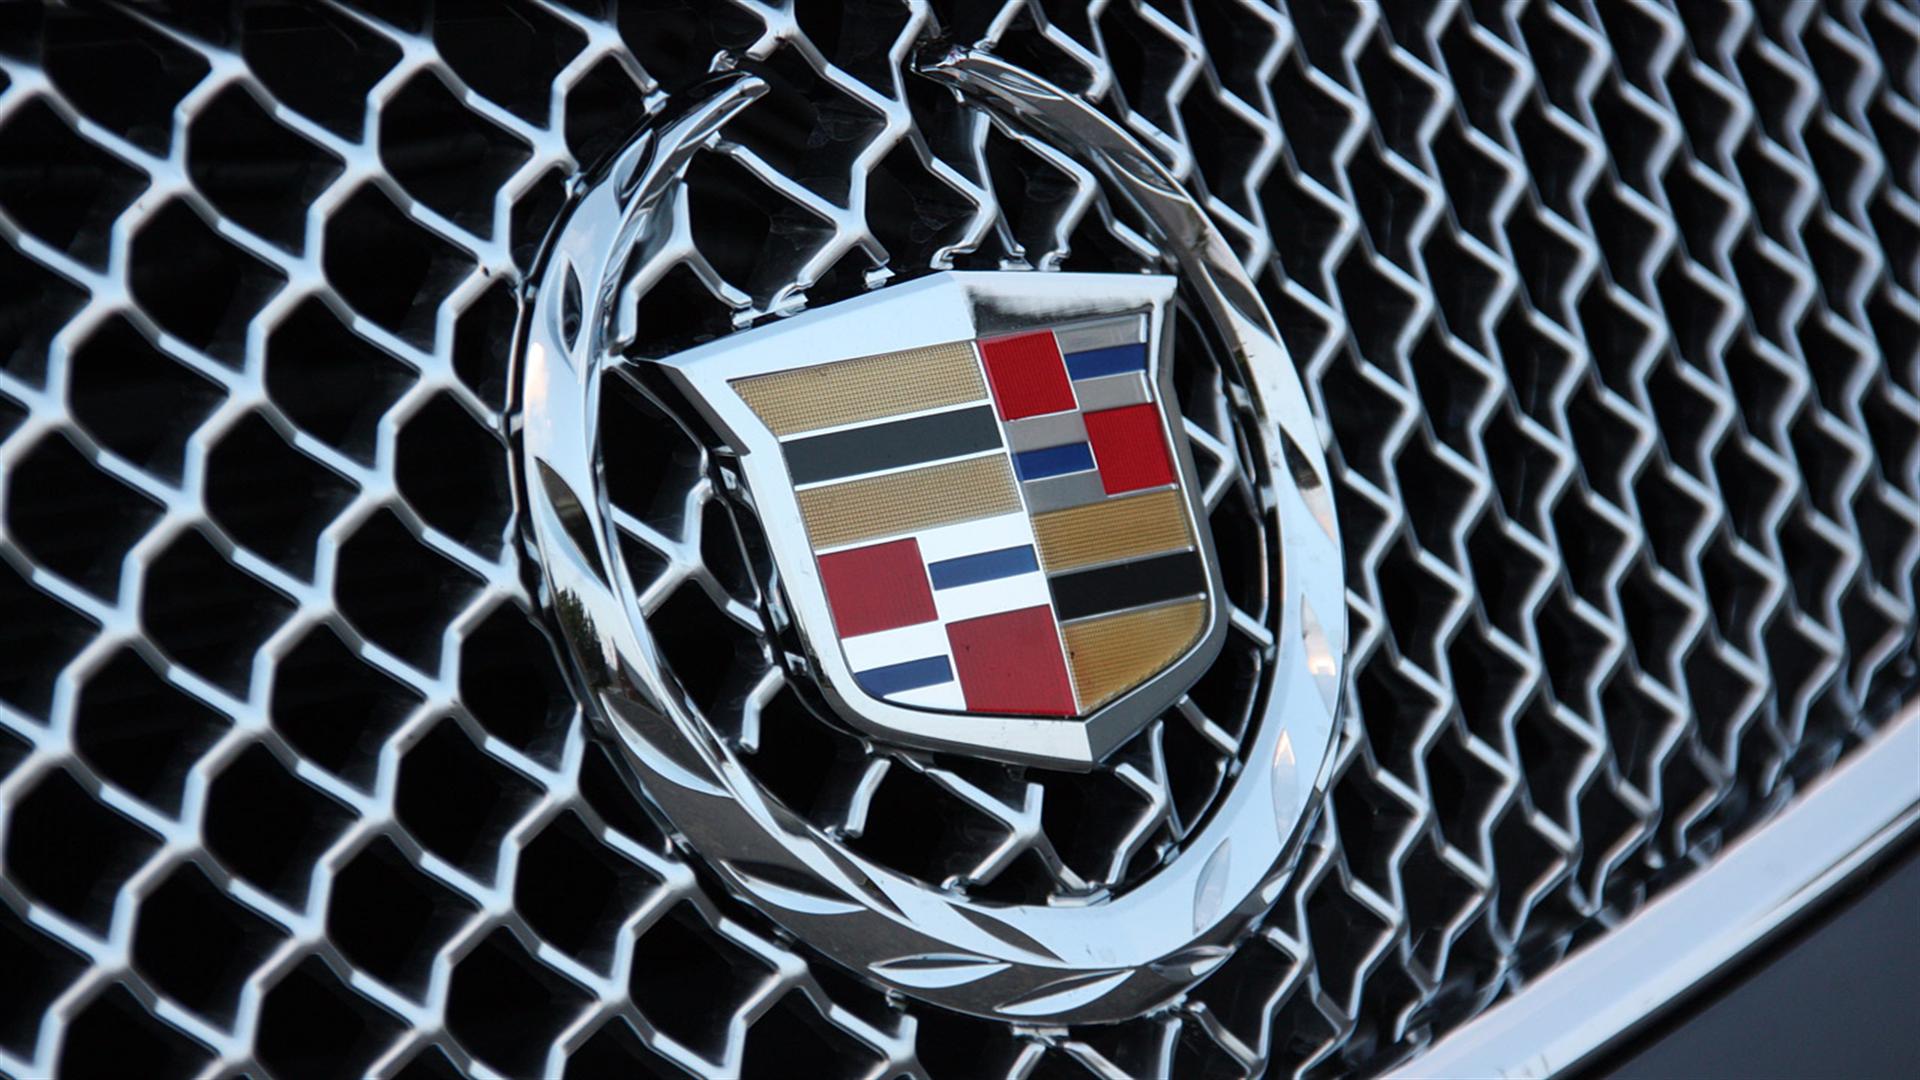 HD Cadillac Logo Wallpaper